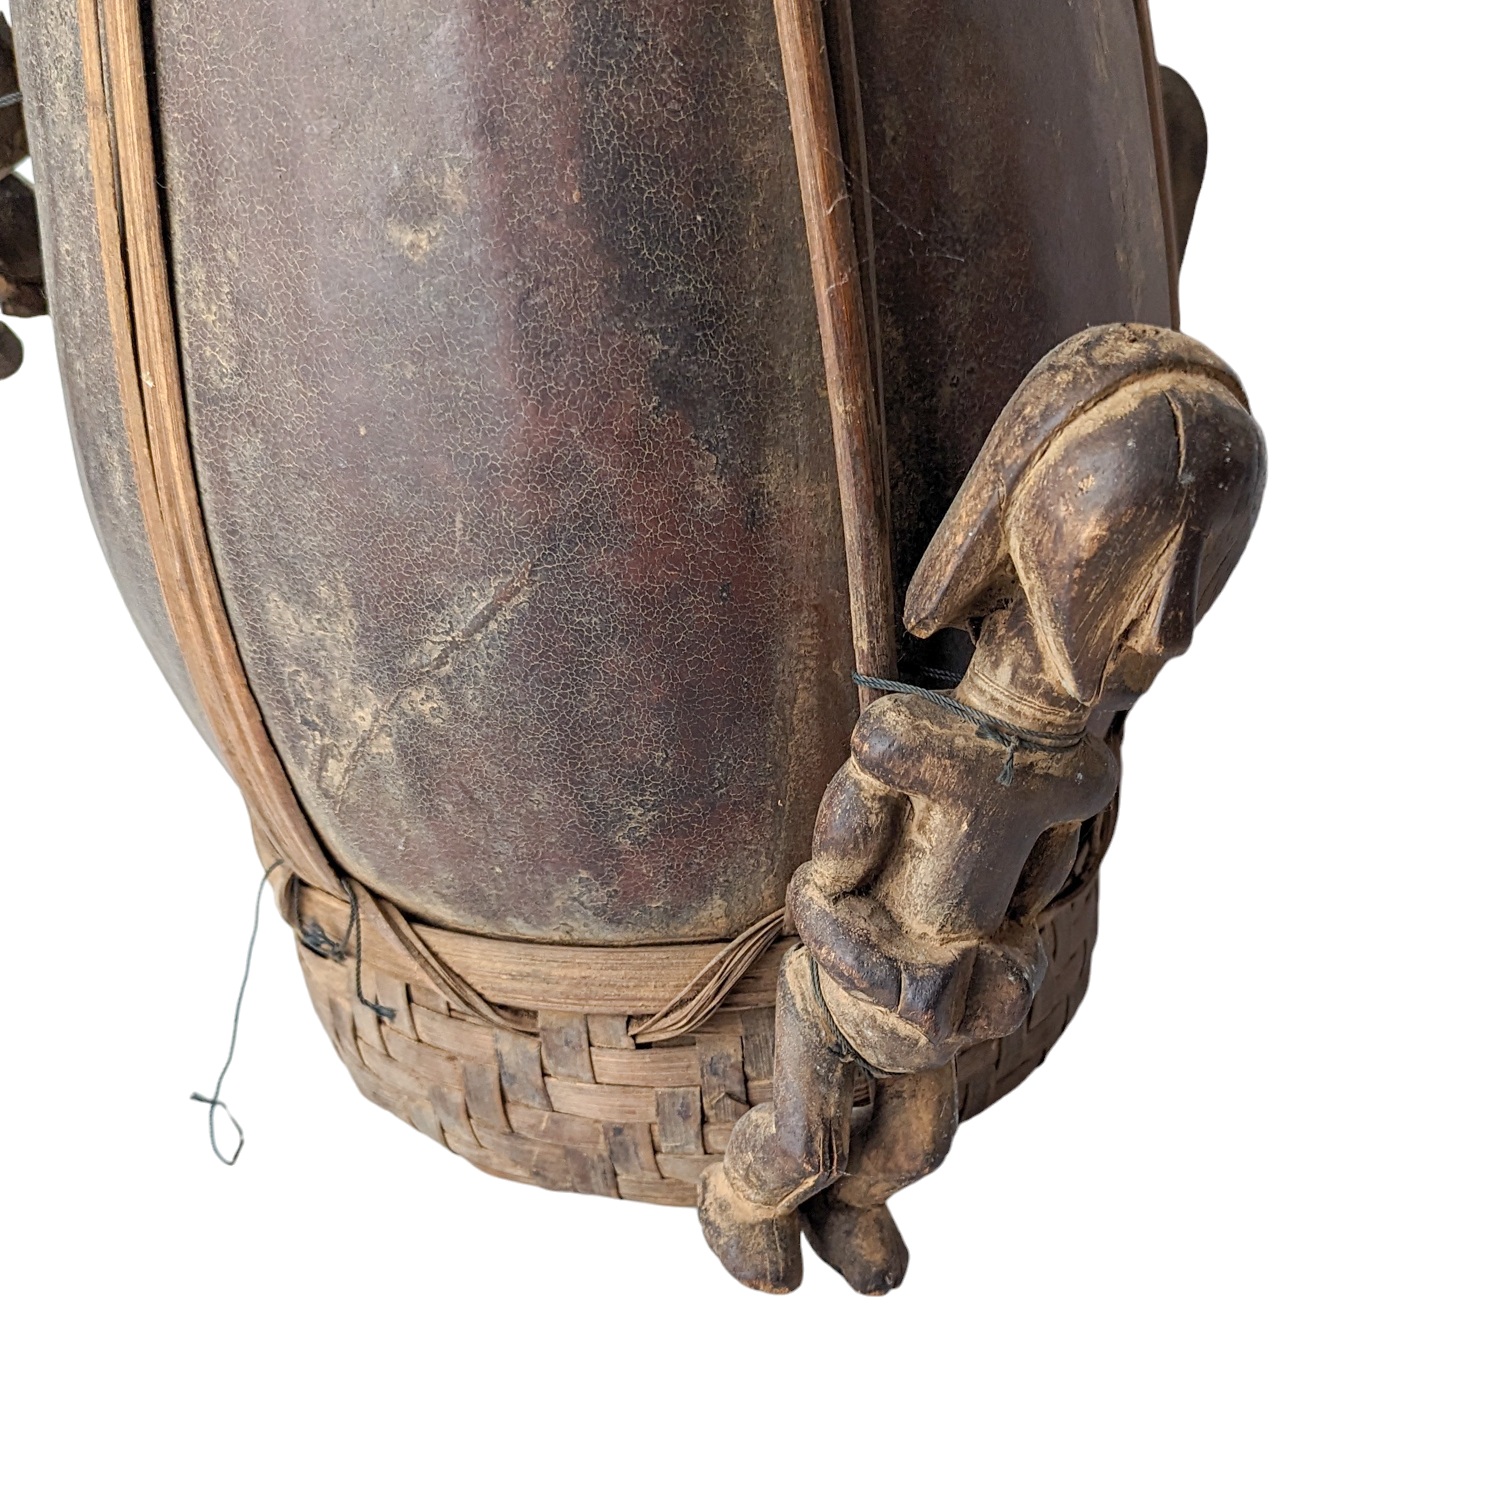 Antique Cameroon Grasslands Calabash Gourd Trophy Vessel